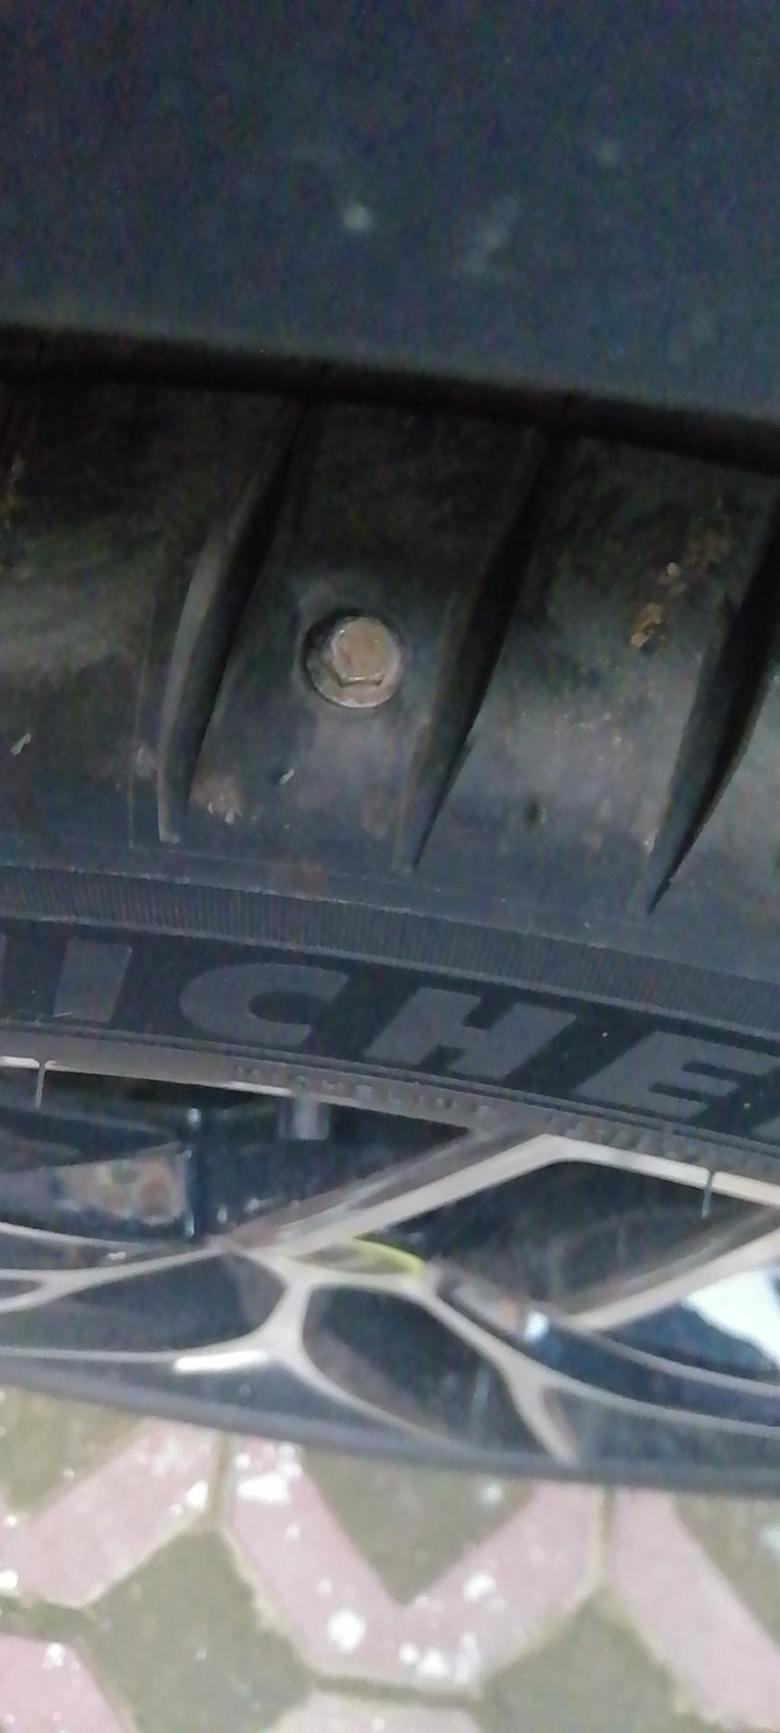 荣威rx5 新车今天发现车胎被扎了，怎么处理，给个意见吧